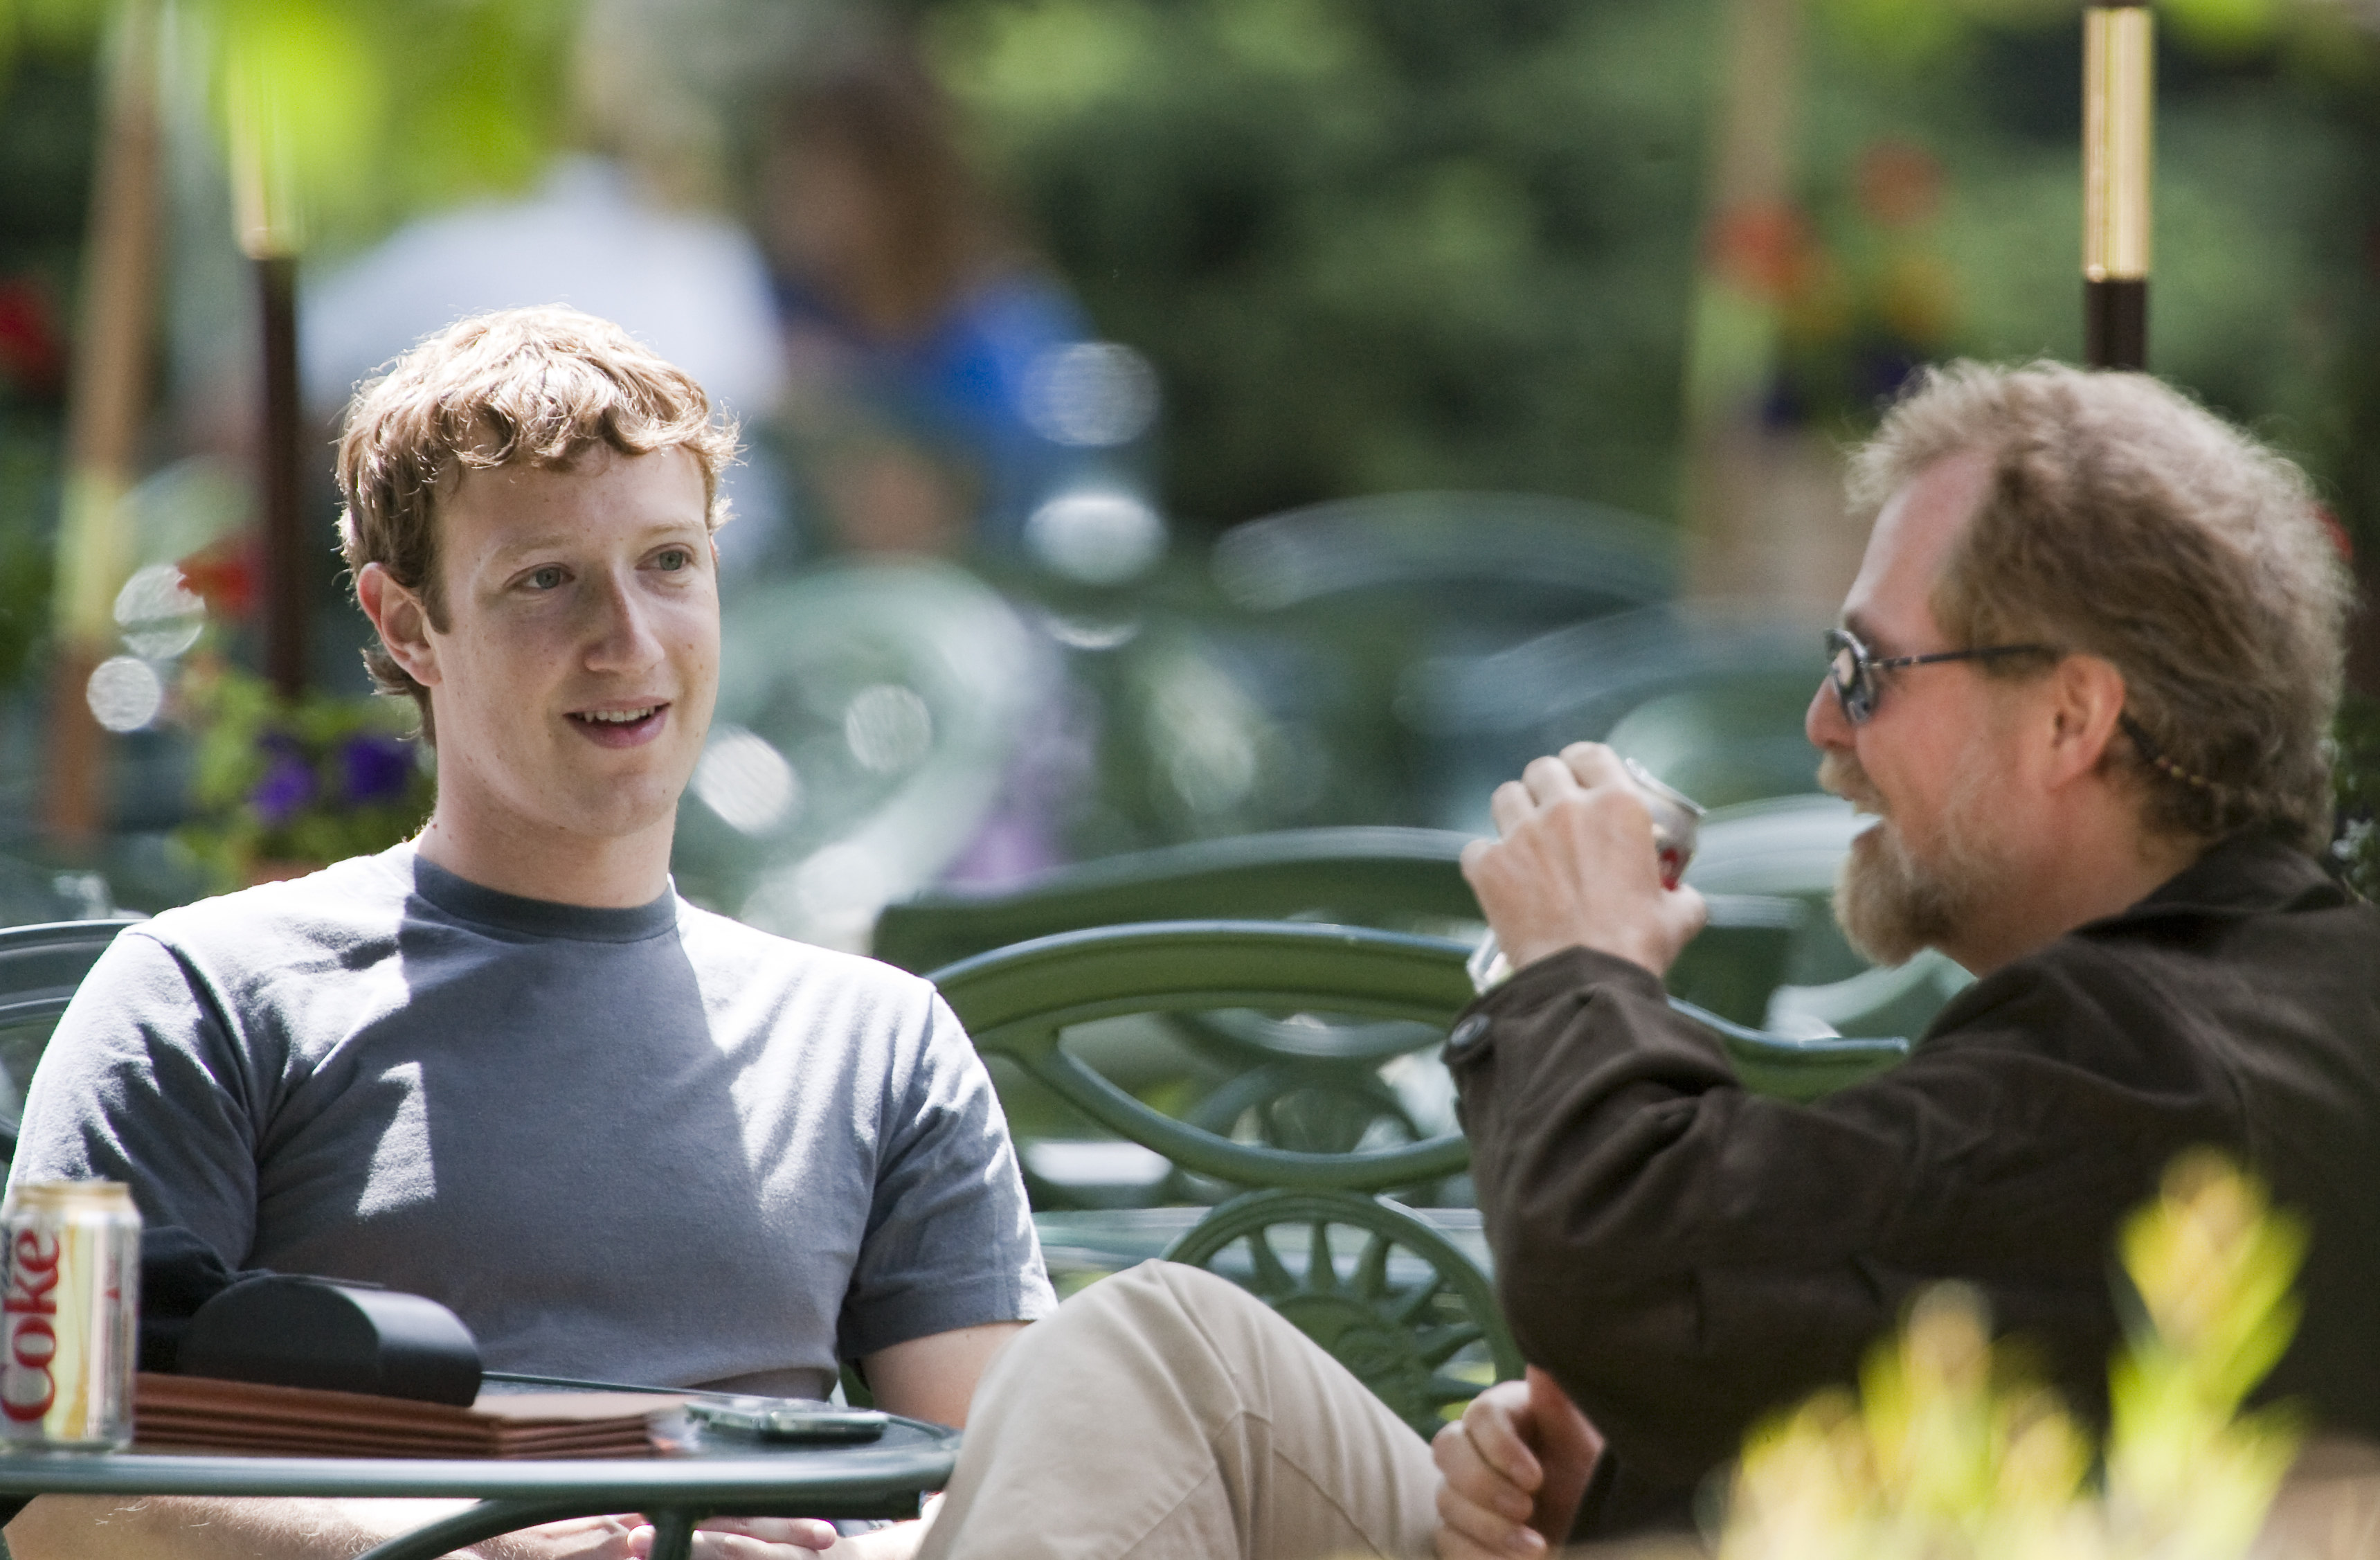 Integritet, Mark Zuckerberg, Facebook, Censur, Privatliv